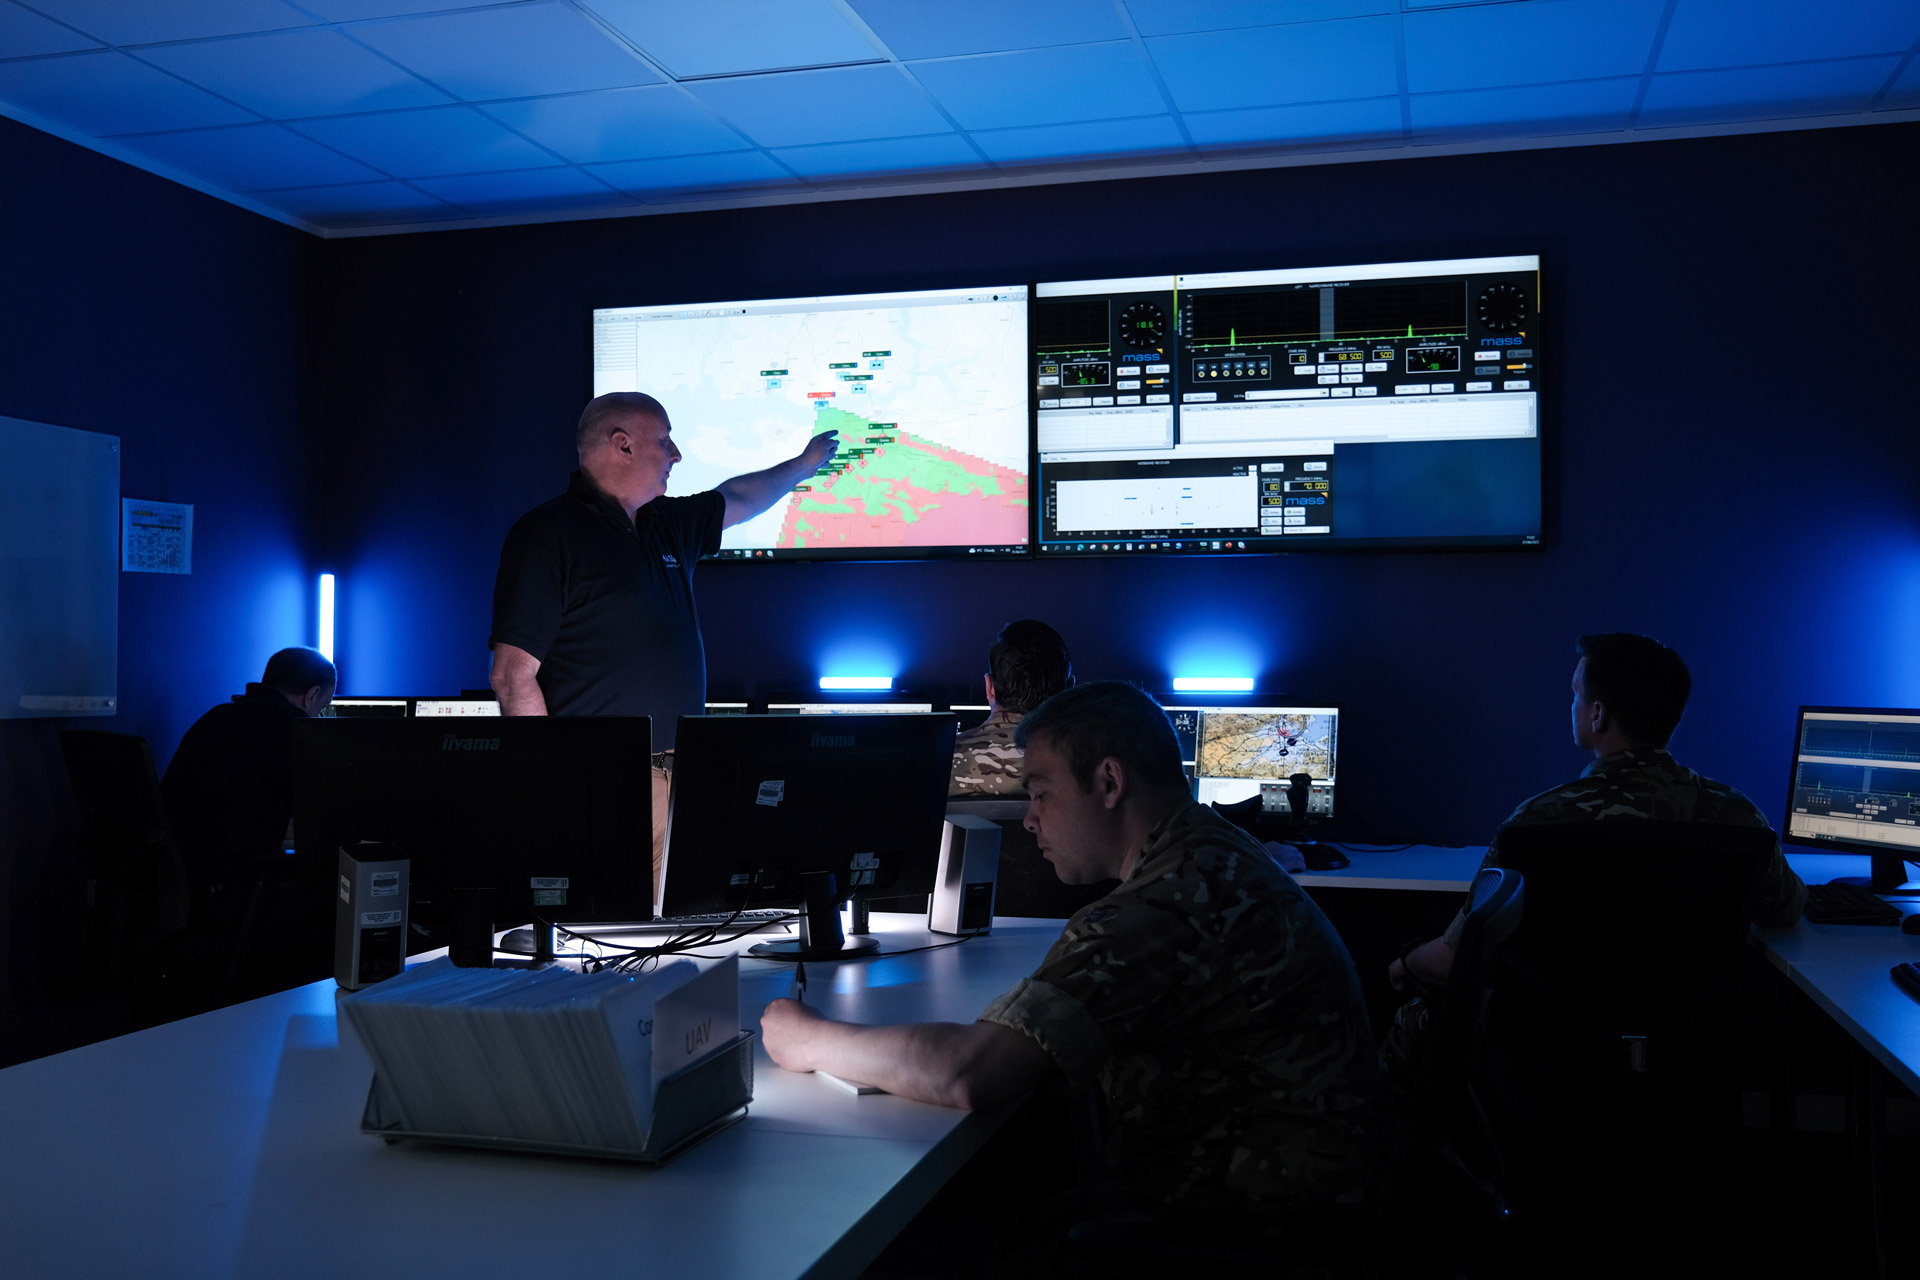 electronic warfare simulation and training at MASS